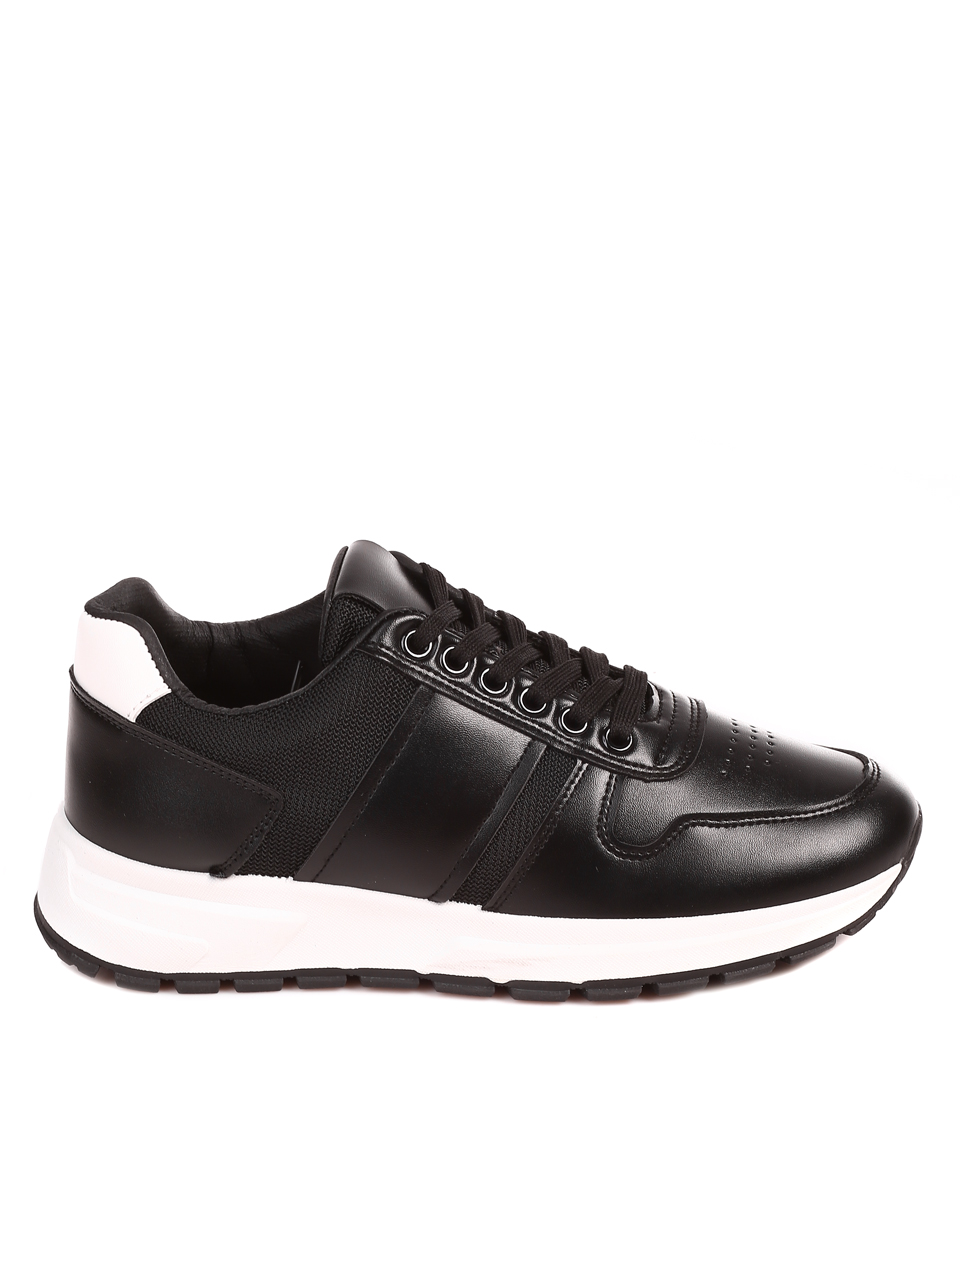 Ежедневни мъжки обувки в черно и бяло 7U-22596 black/white